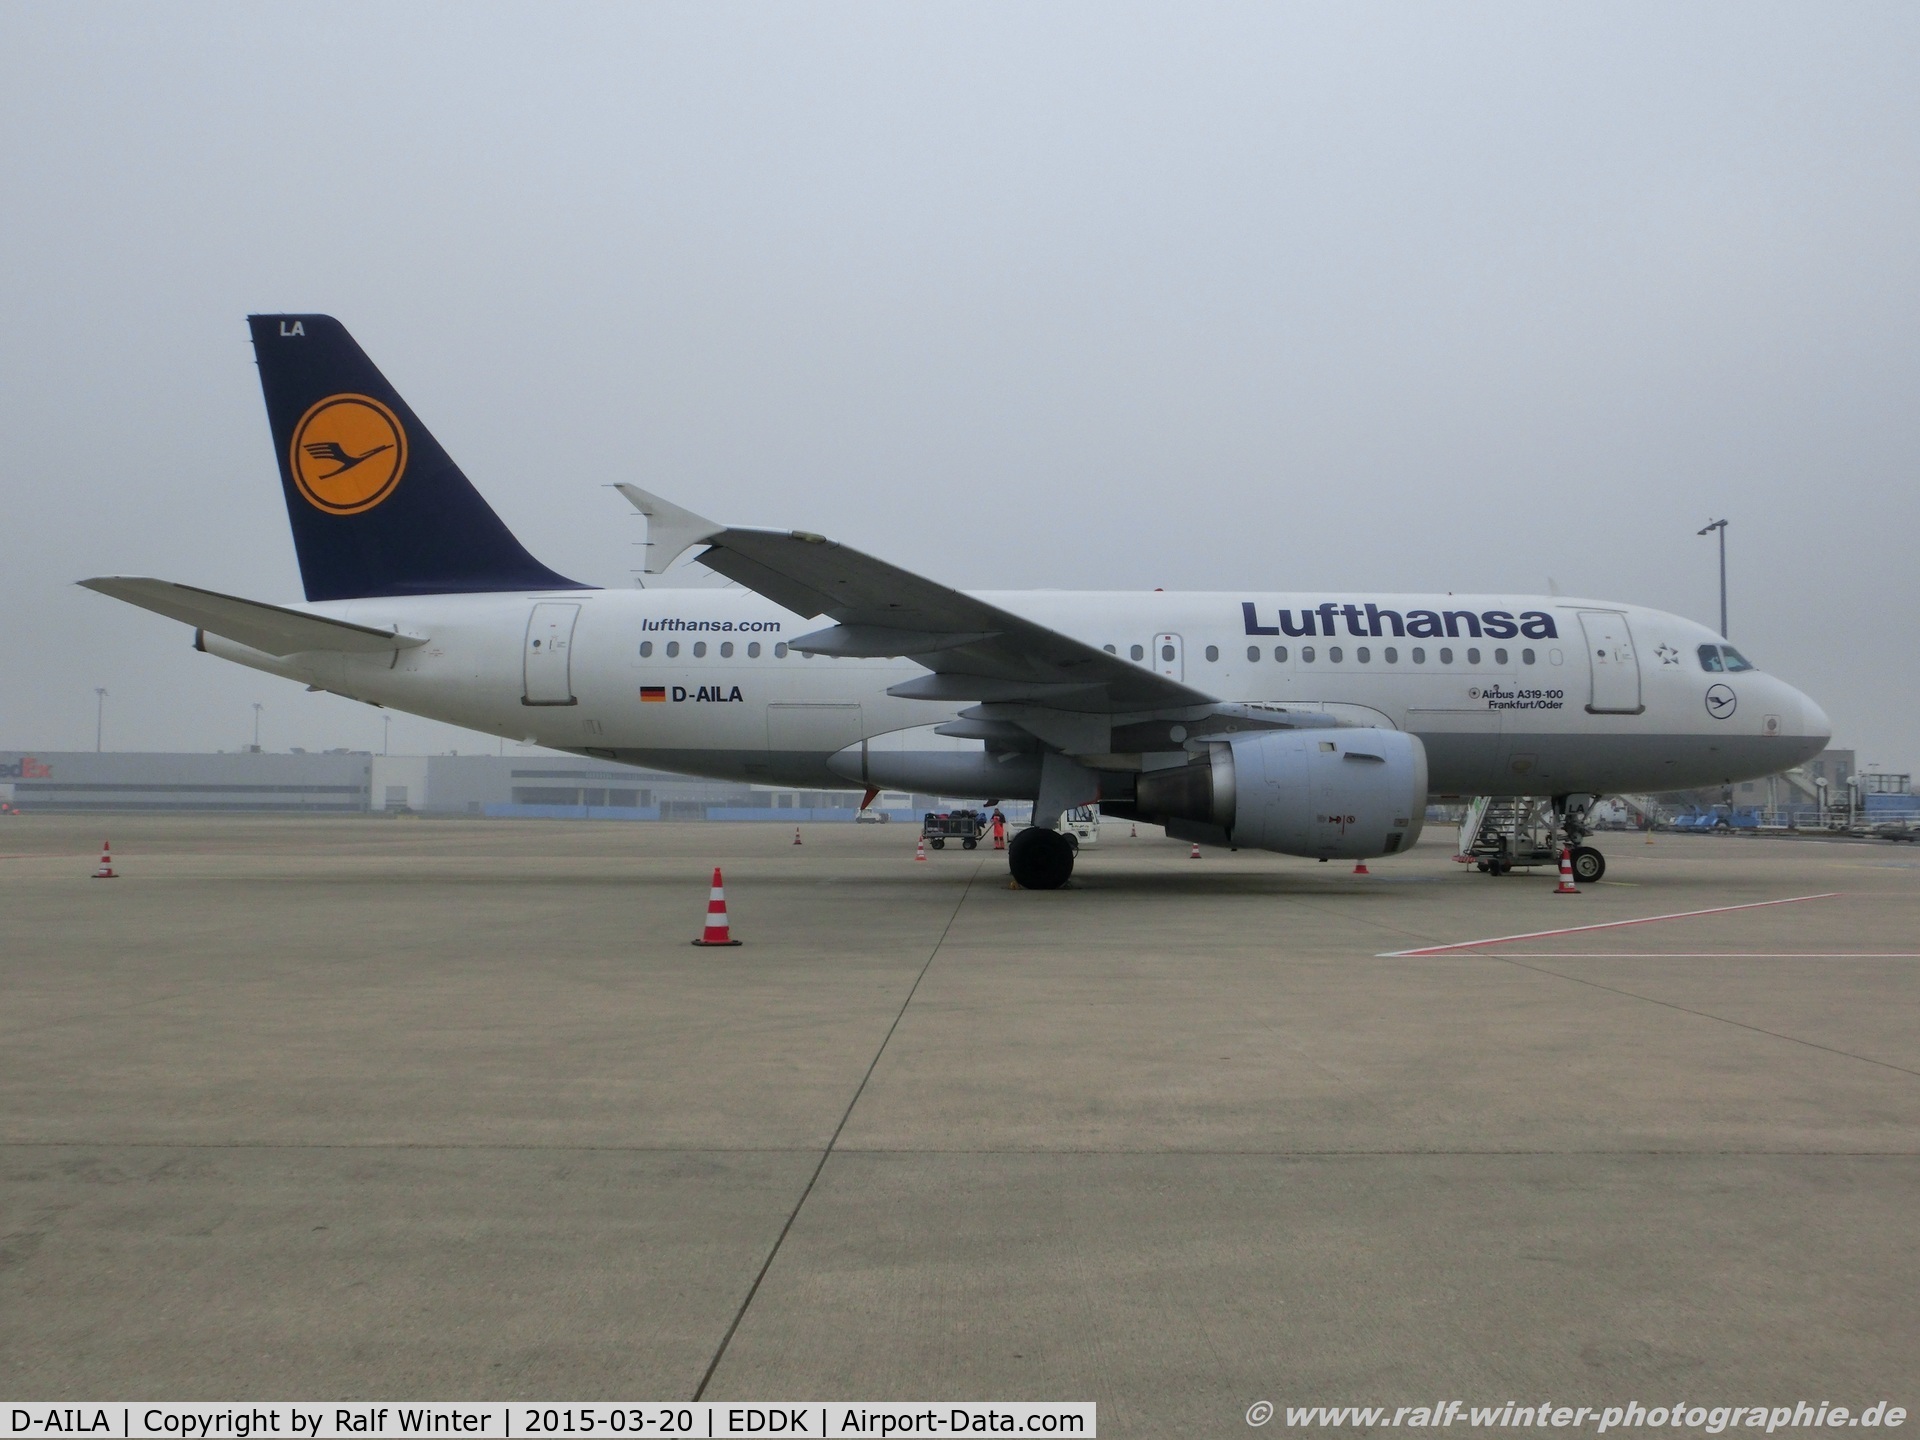 D-AILA, 1996 Airbus A319-114 C/N 609, Airbus A319-114 - LH DLH Lufthansa 'Frankfurt Oder' - 609 - D-AILA - 20.03.2015 - CGN